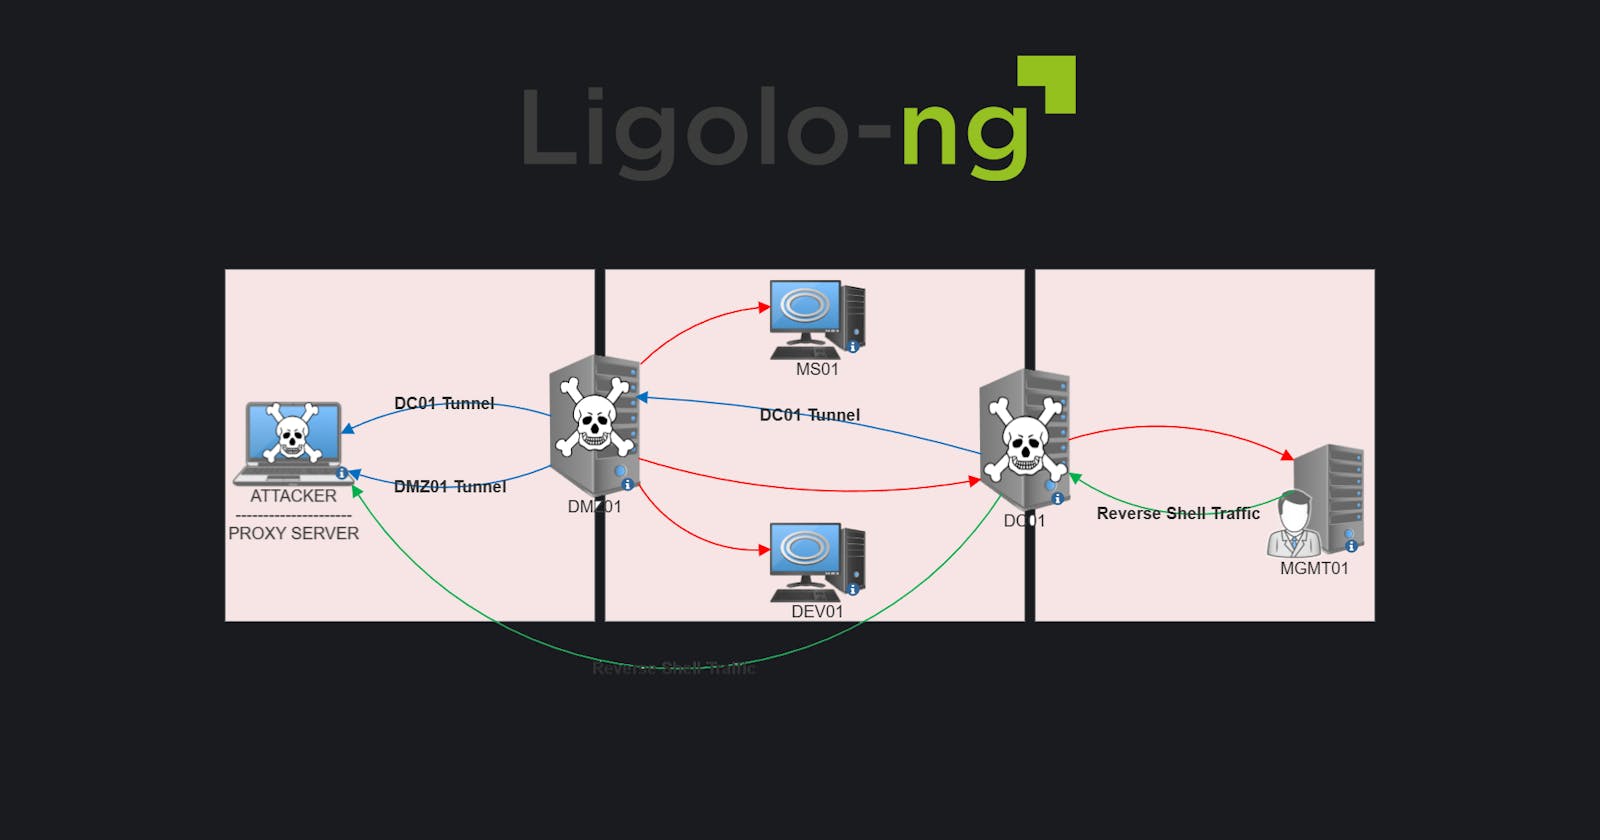 Ligolo-ng: Tunneling like a VPN